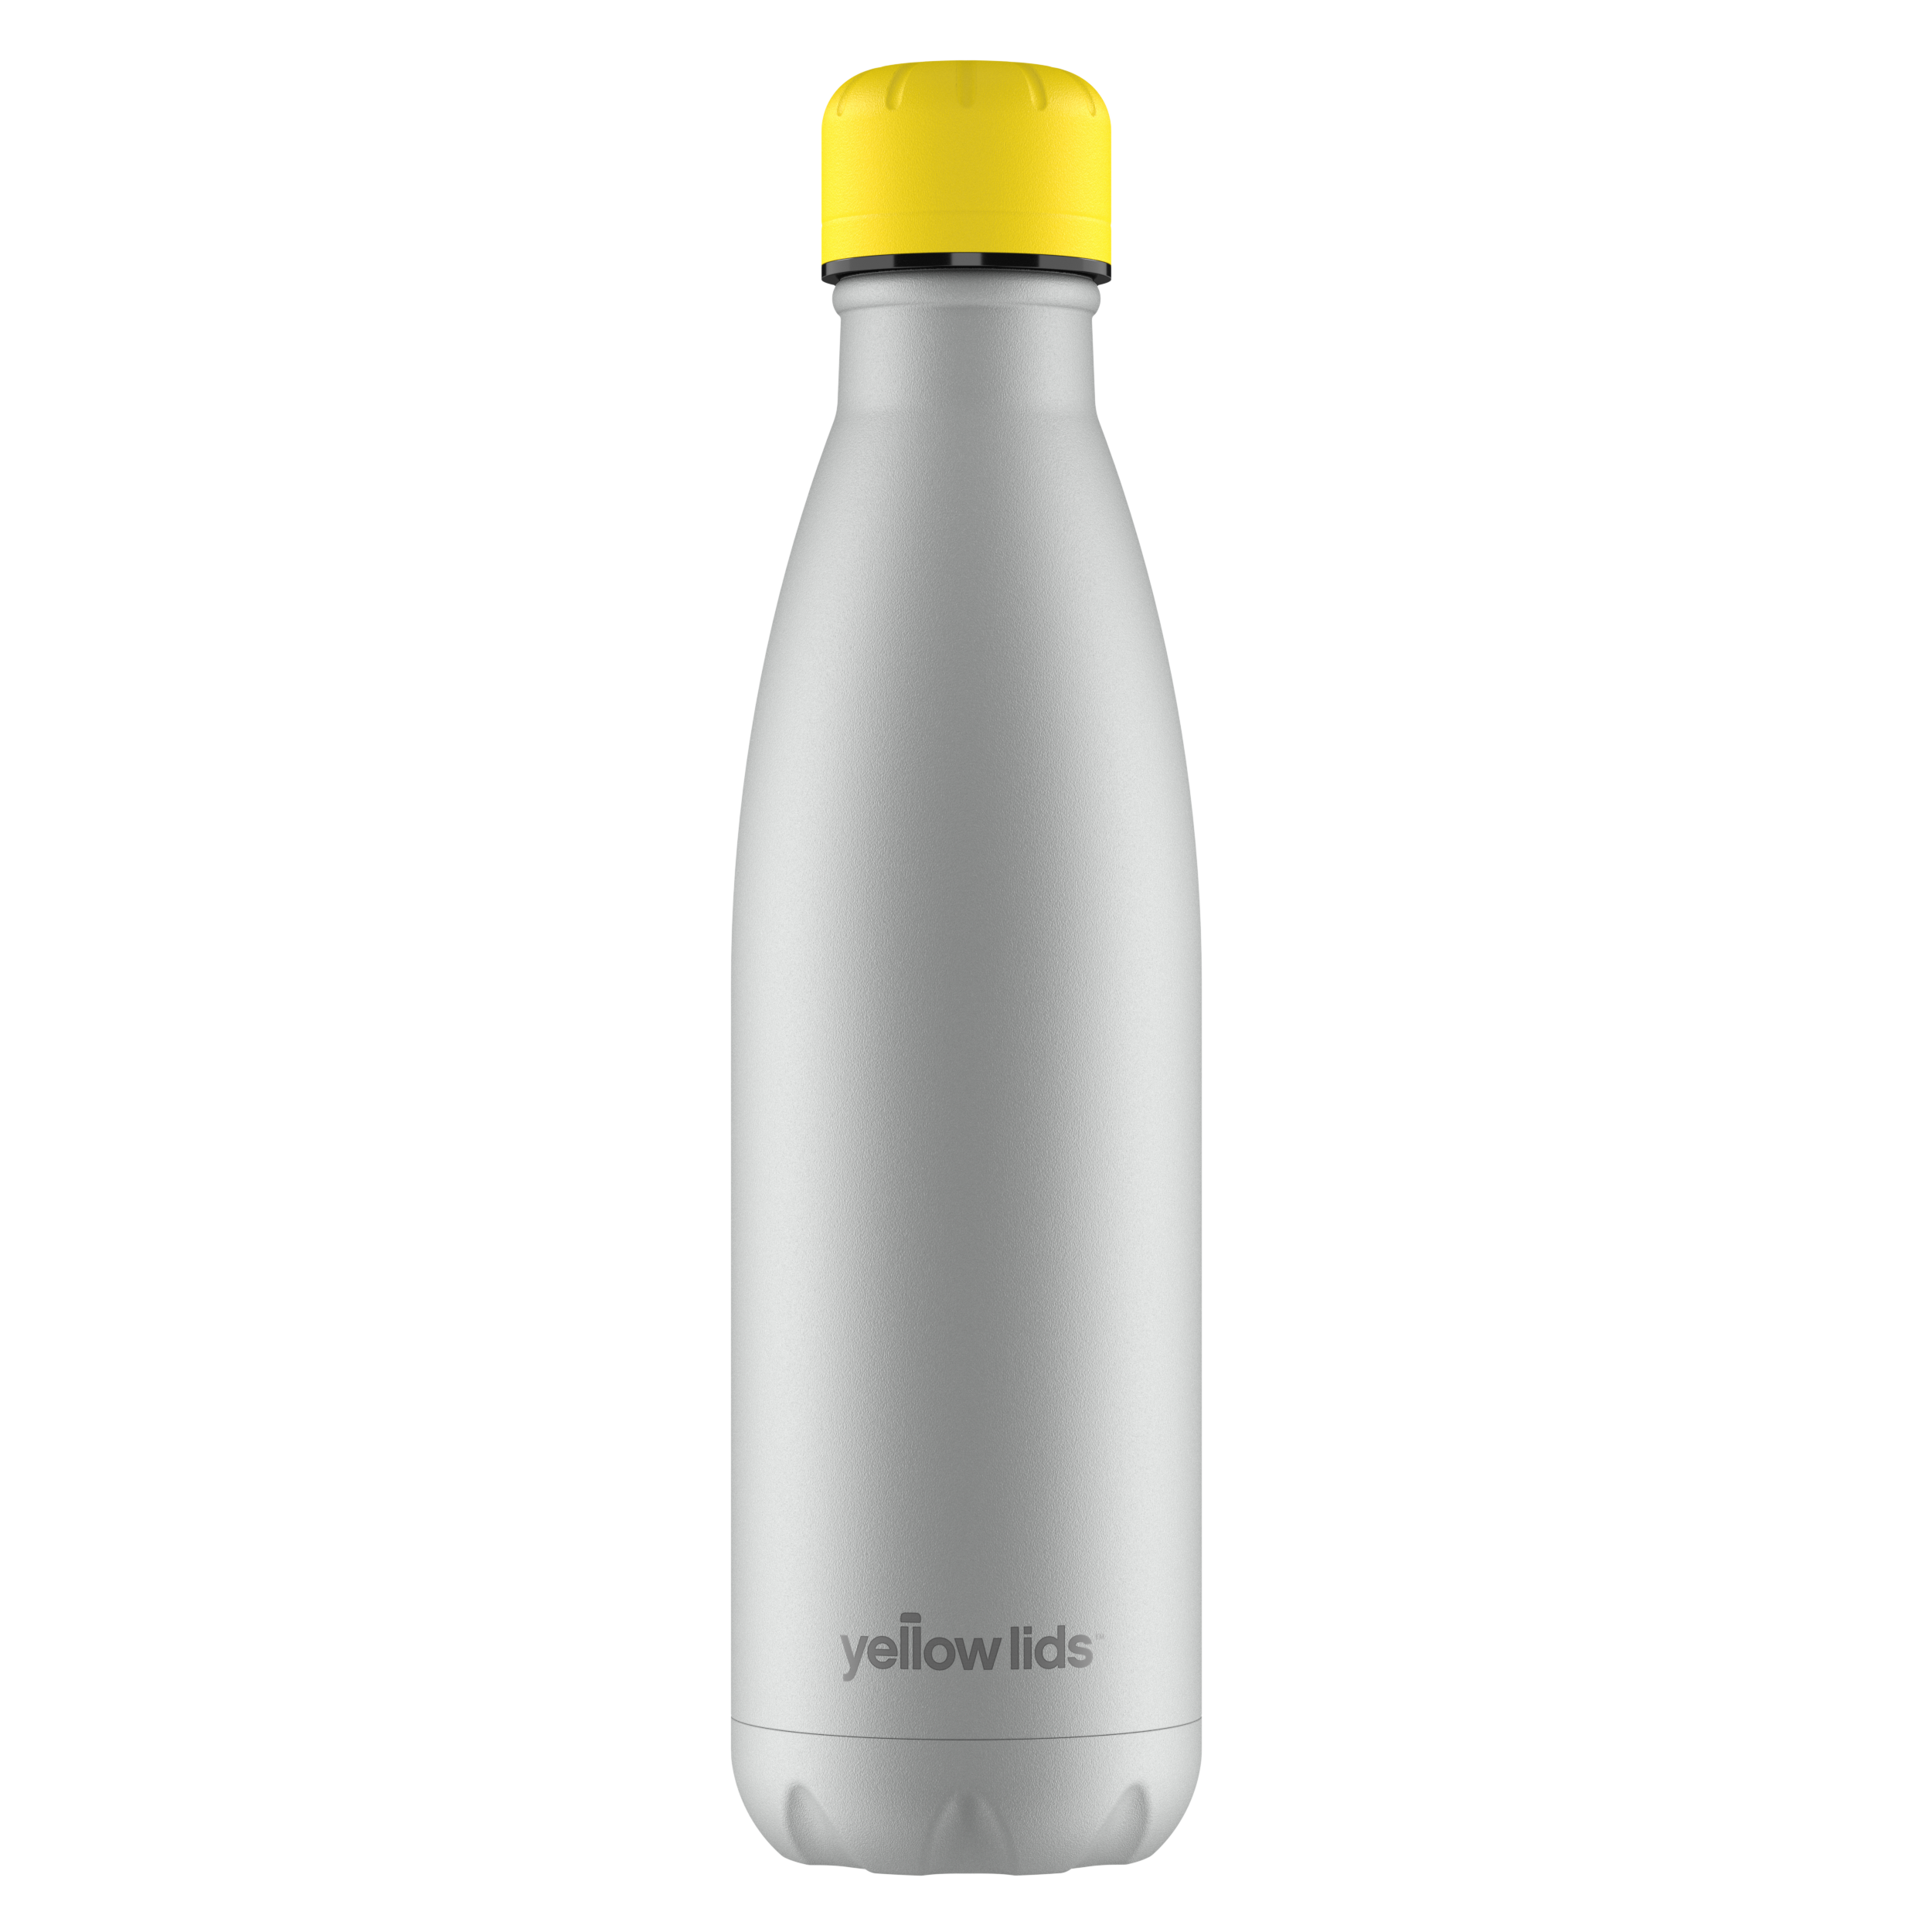 Seal Grey Water Bottle